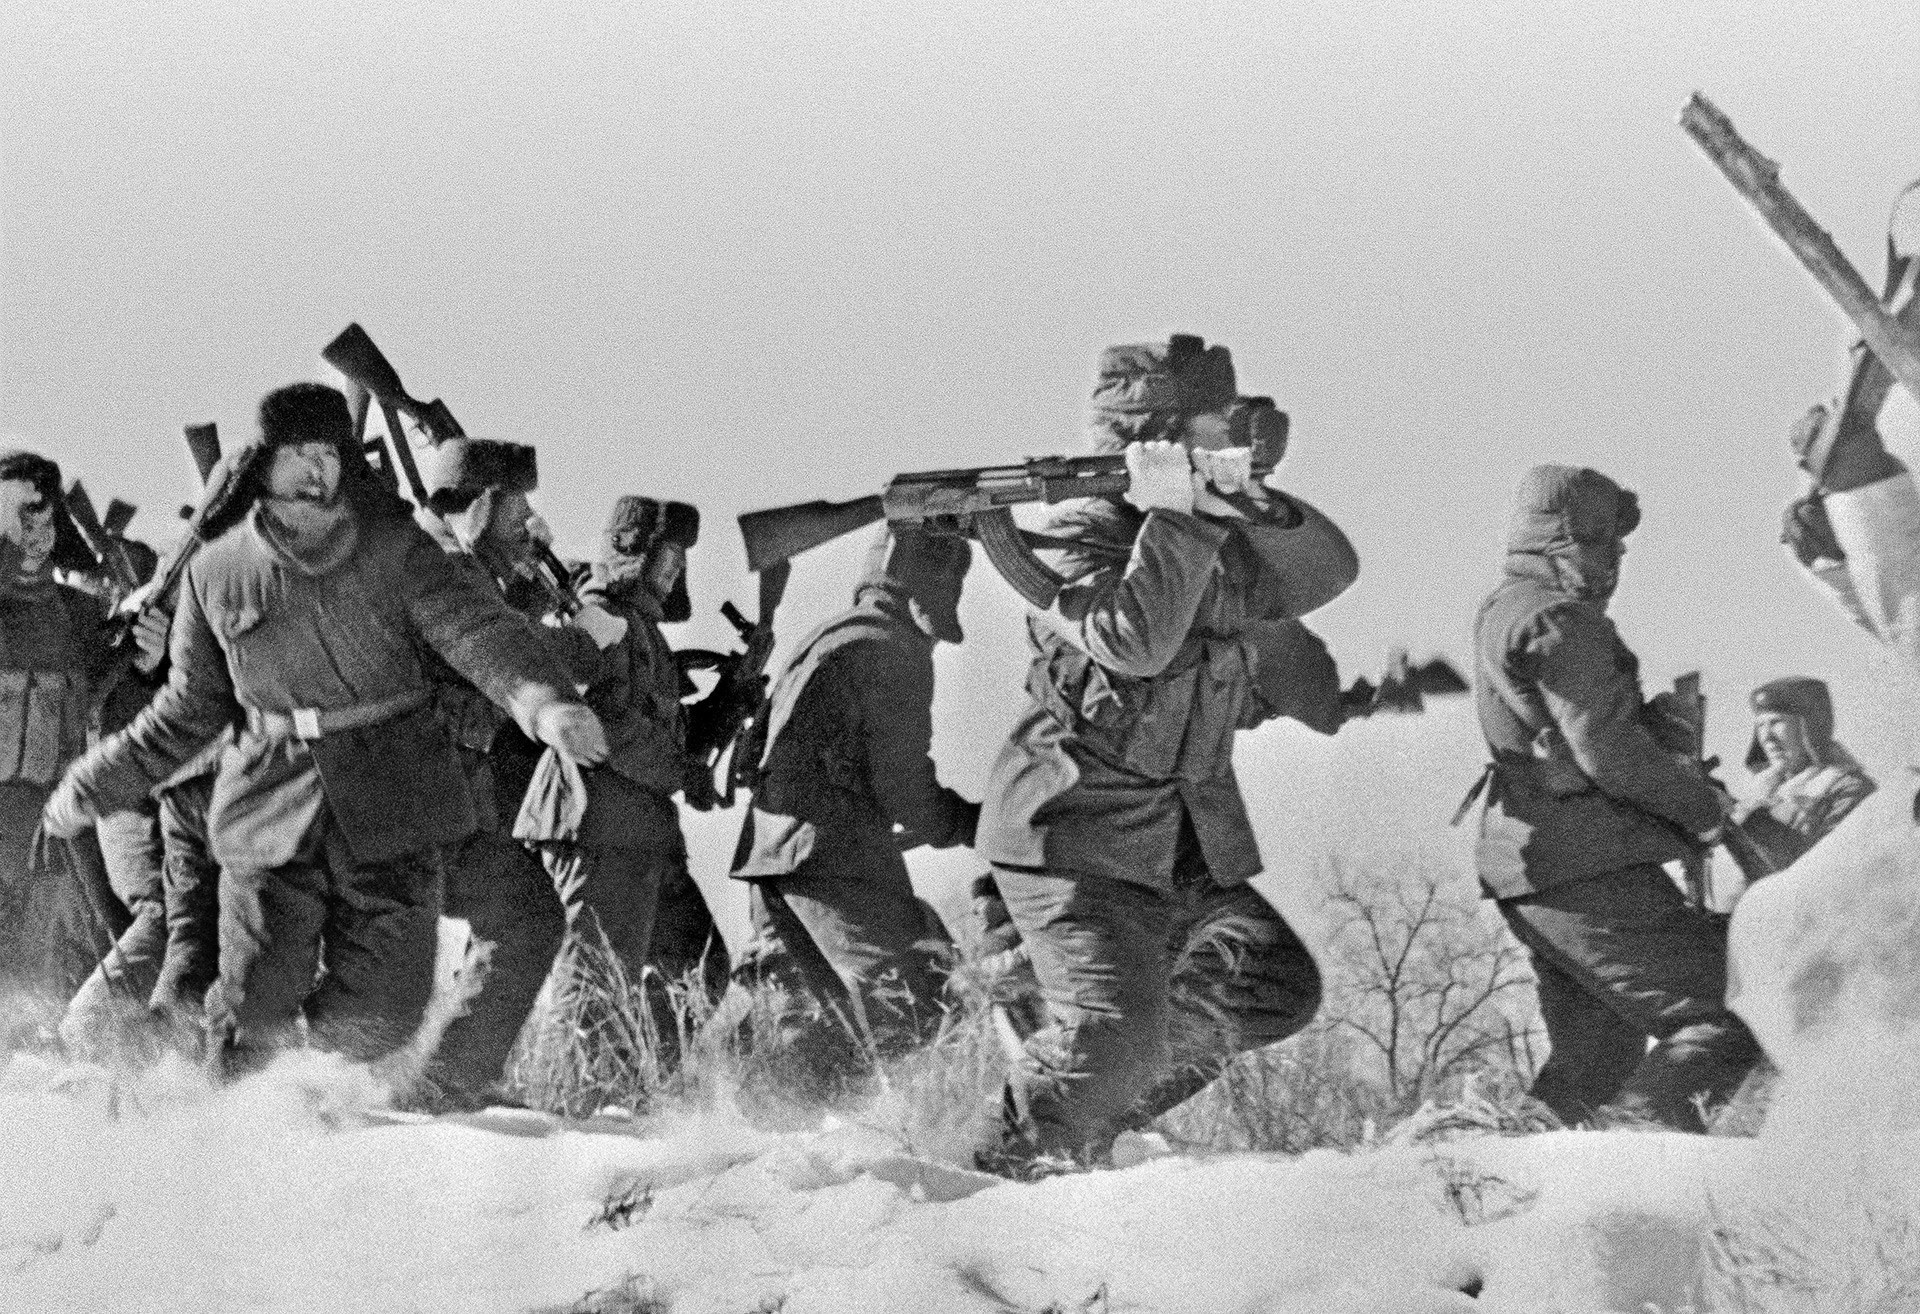 Sovjetsko-kitajski obmejni konflikt leta 1969. Na fotografiji je odred kitajskh vojakov ob poskusu preboja na otok Damanski.